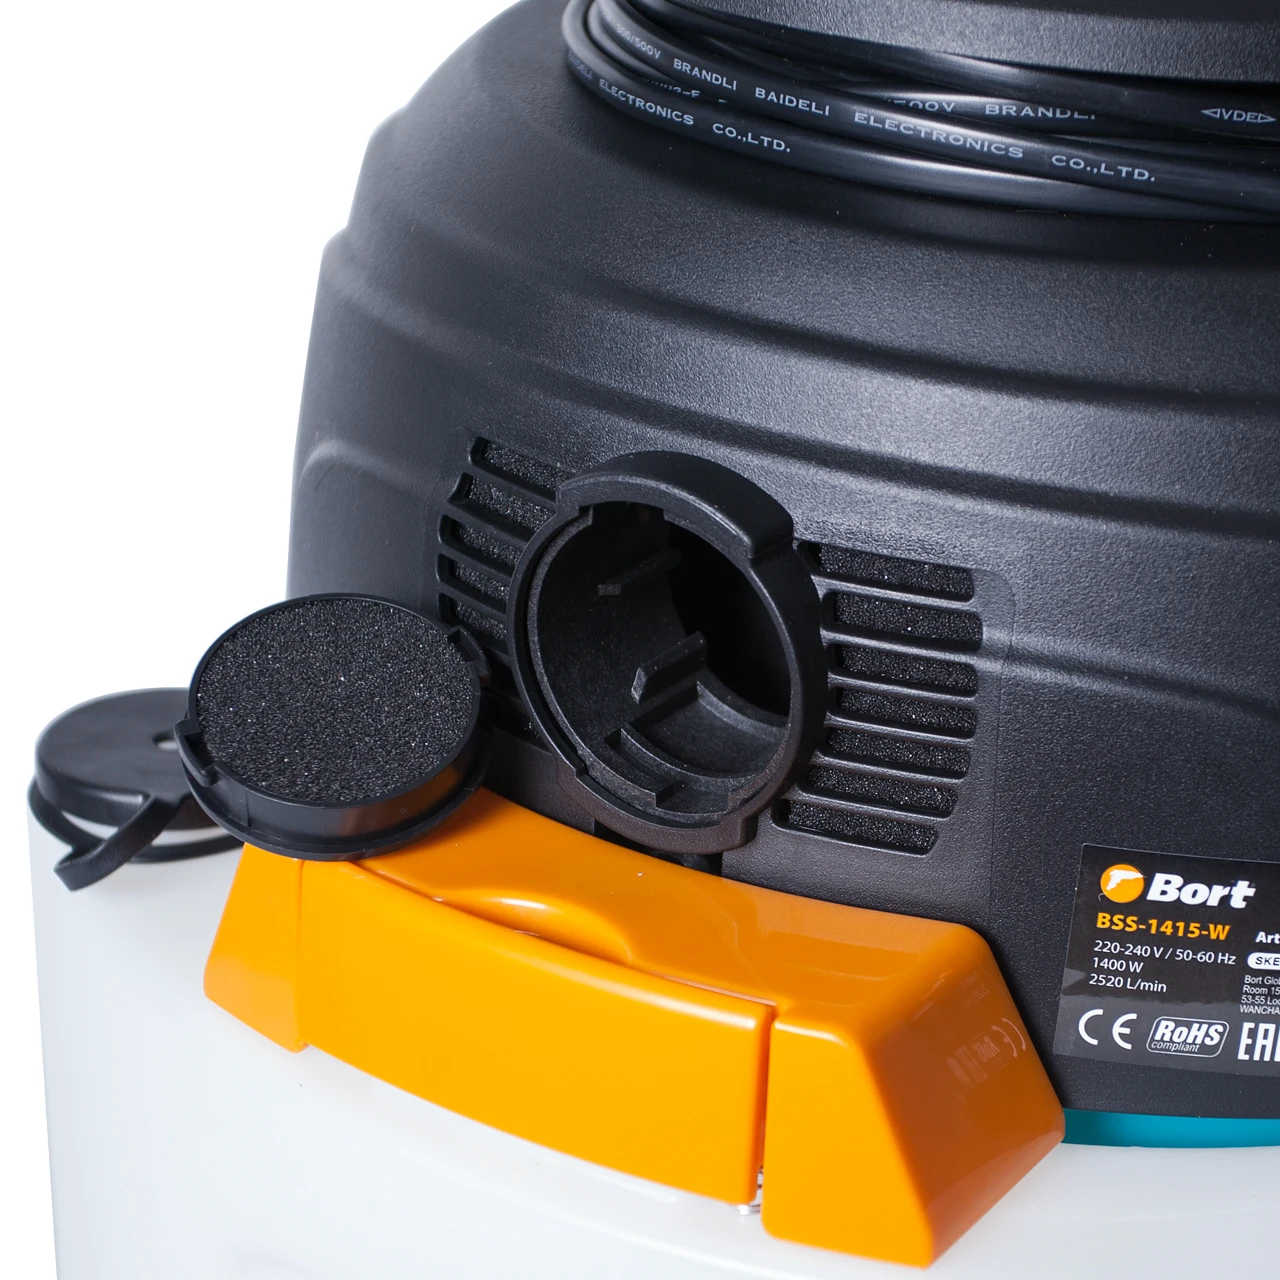 Моющий технический пылесос Bort BSS-1415-W(Мощность 1400 Вт, Распыление и сбор жидкости, электронная регулировка мощности, функция выдува, мешок из ткани для сбора мелкого мусора, HEPA фильтр